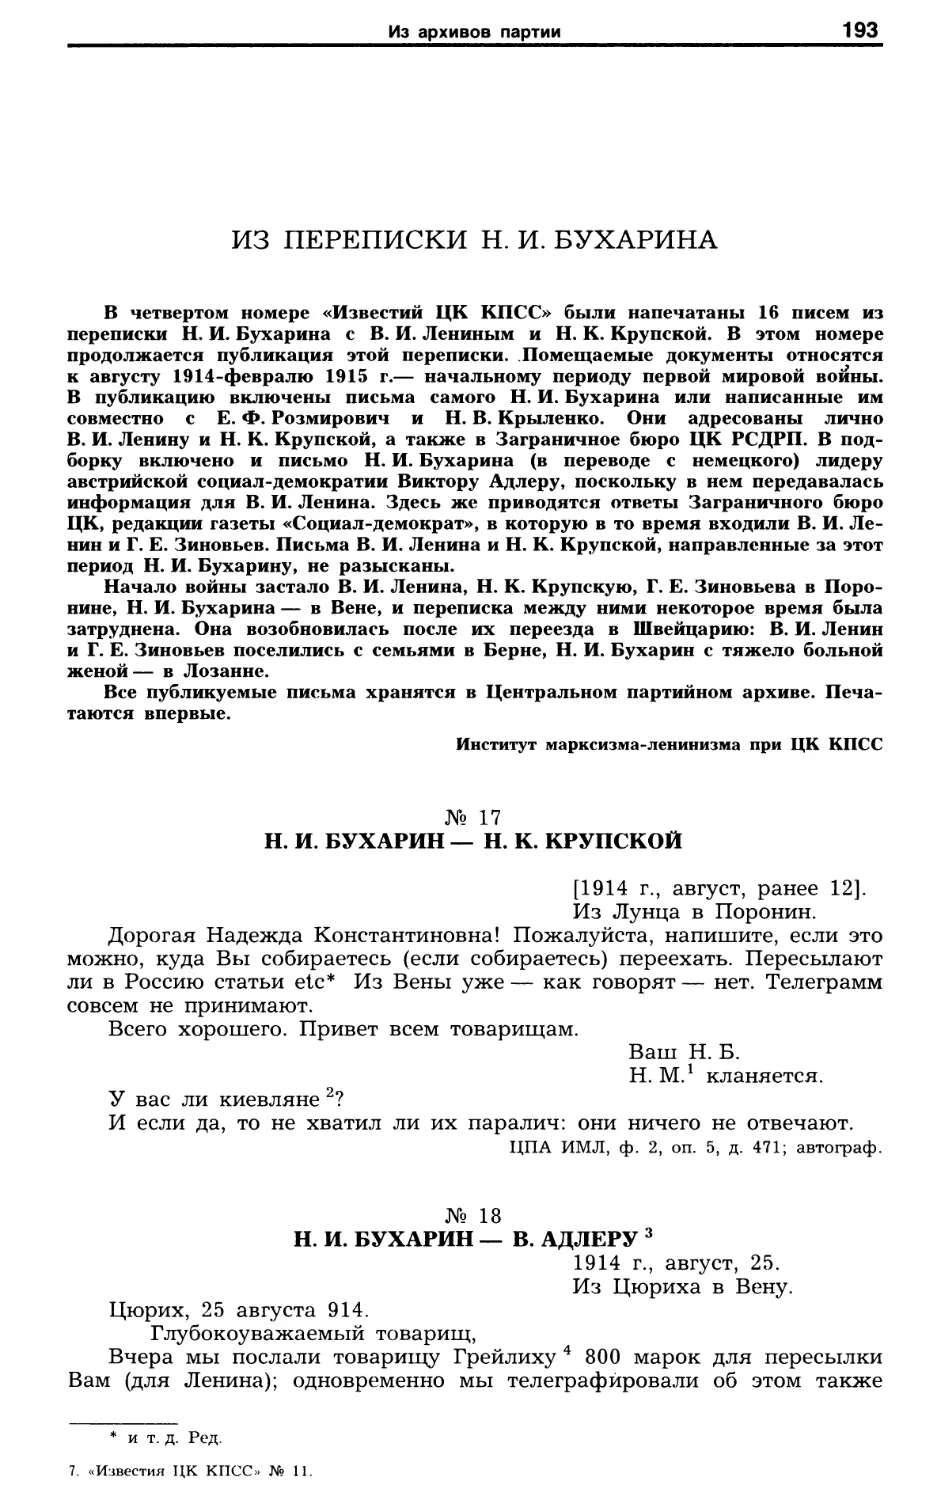 Из переписки Н.И. Бухарина. Письма 1914-1915 гг